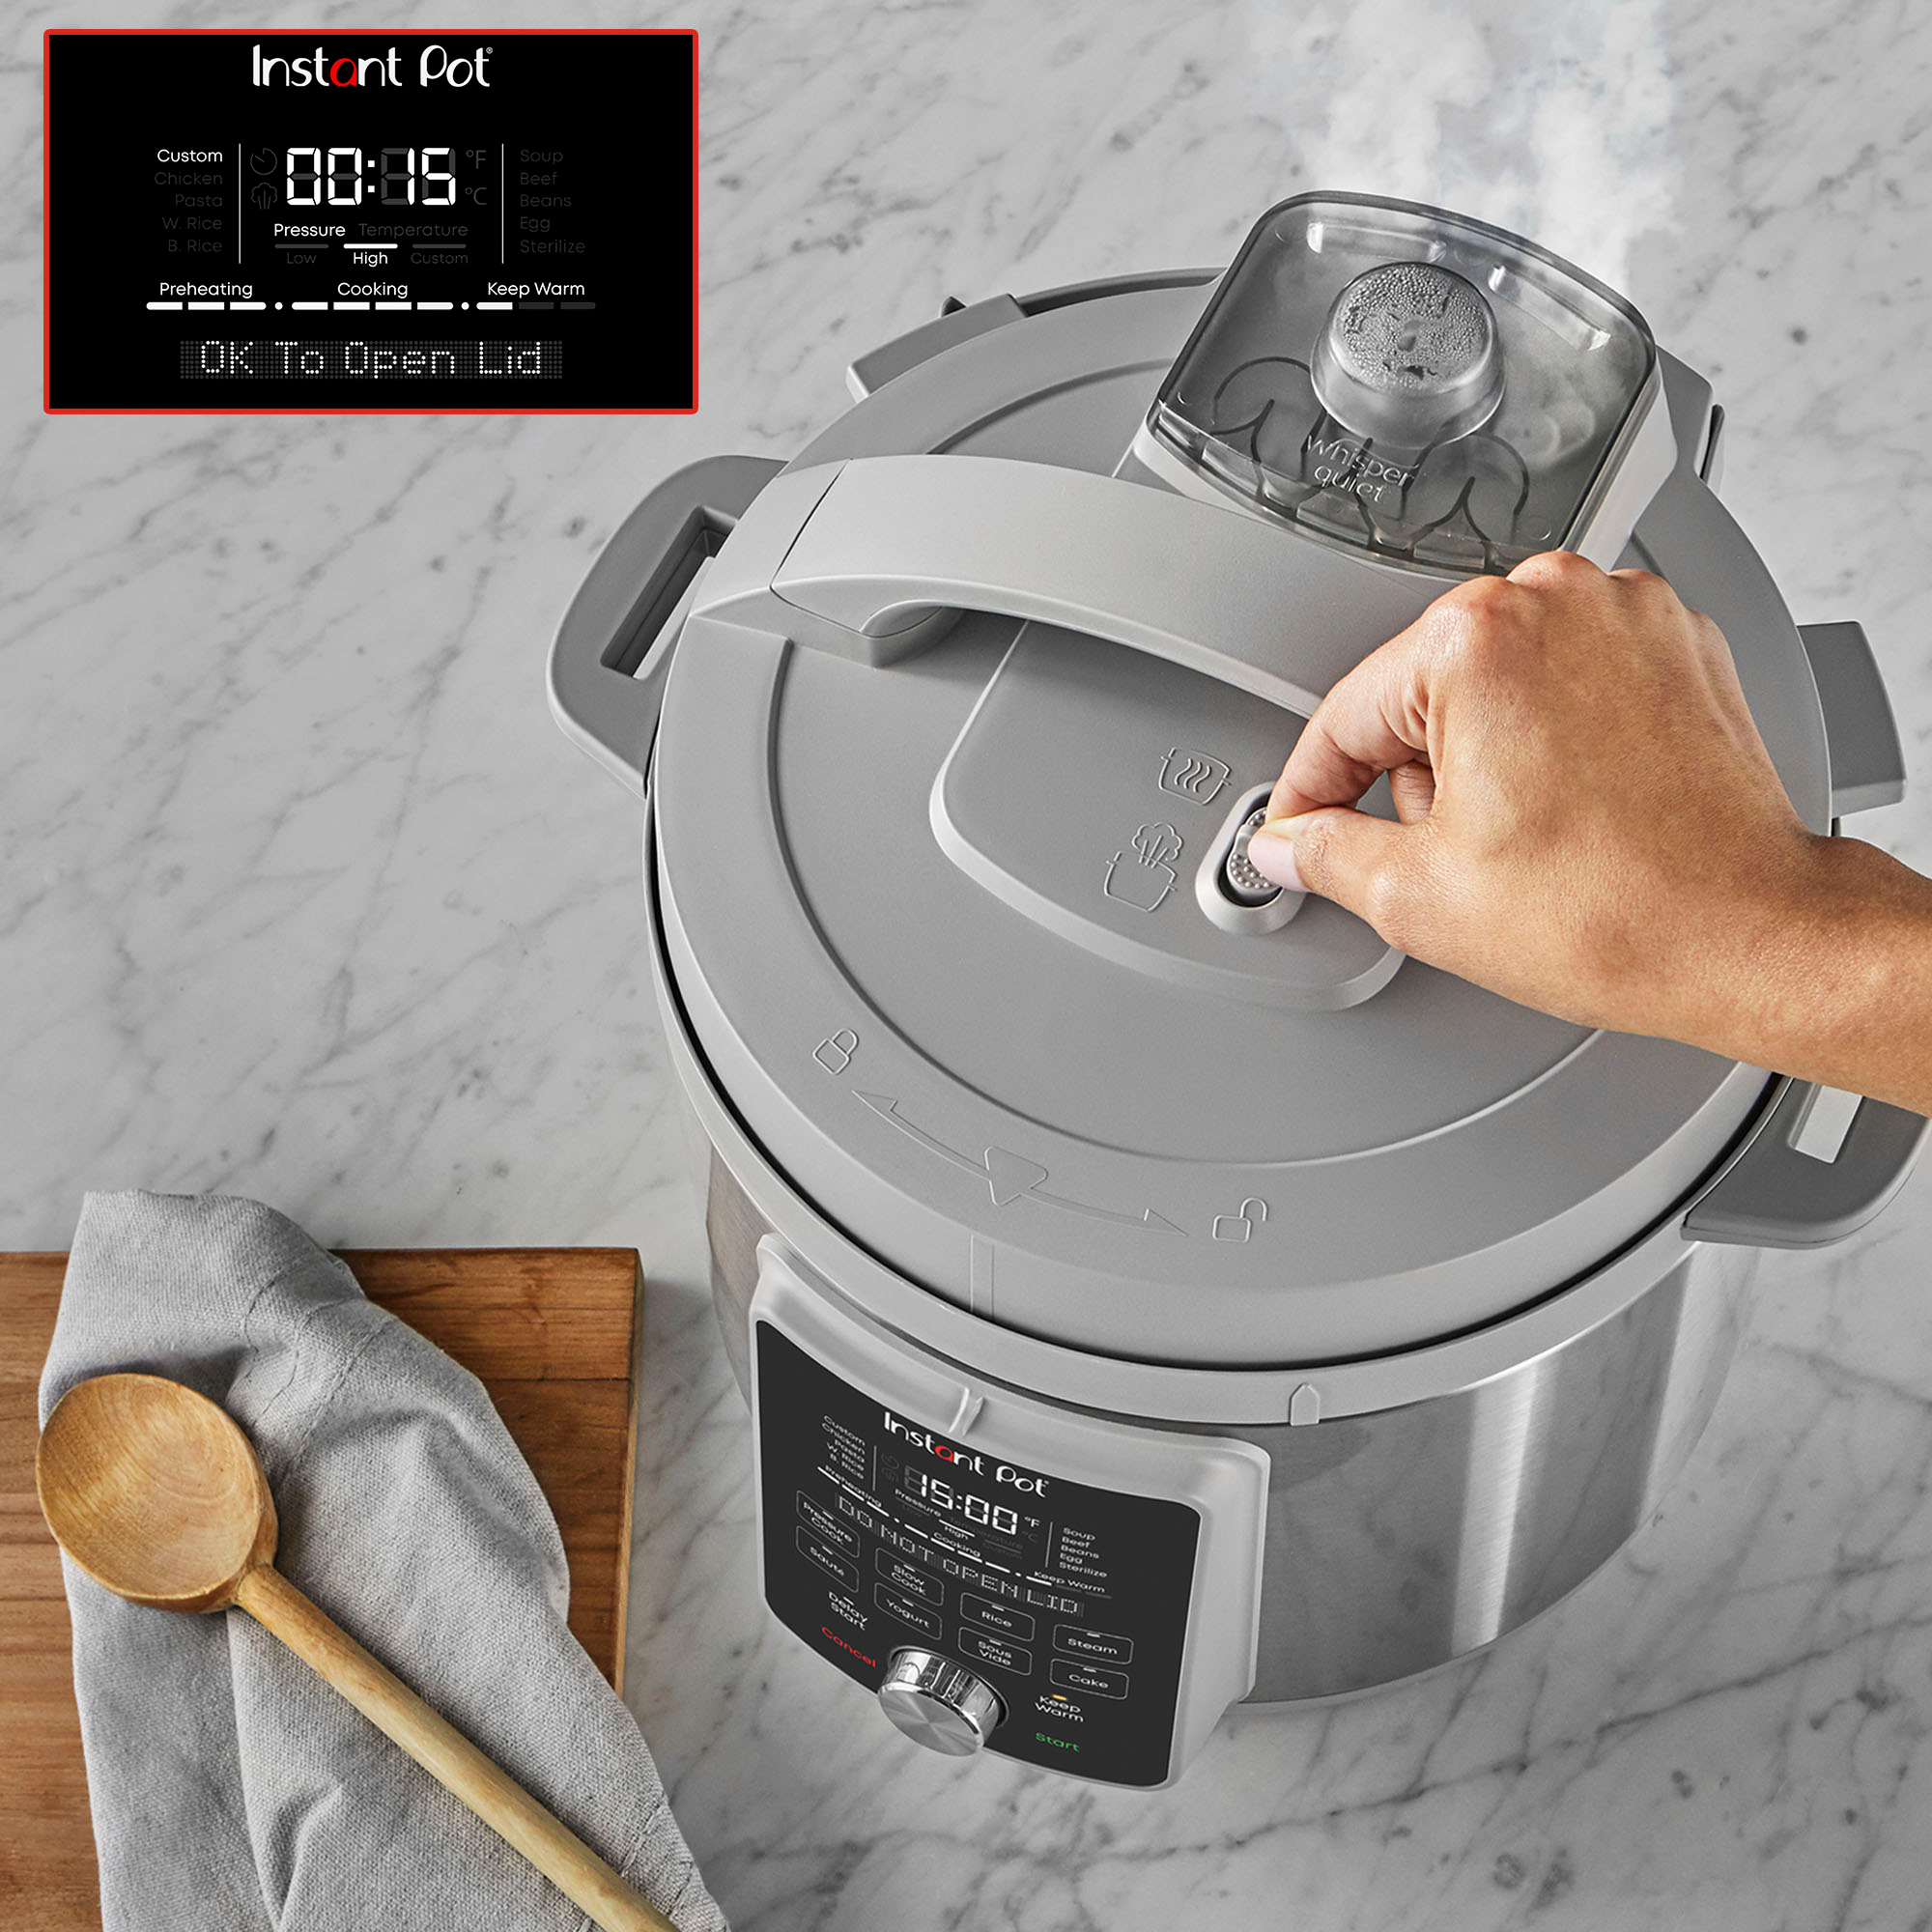 Instant Pot 6-Quart Duo Plus Pressure Cooker